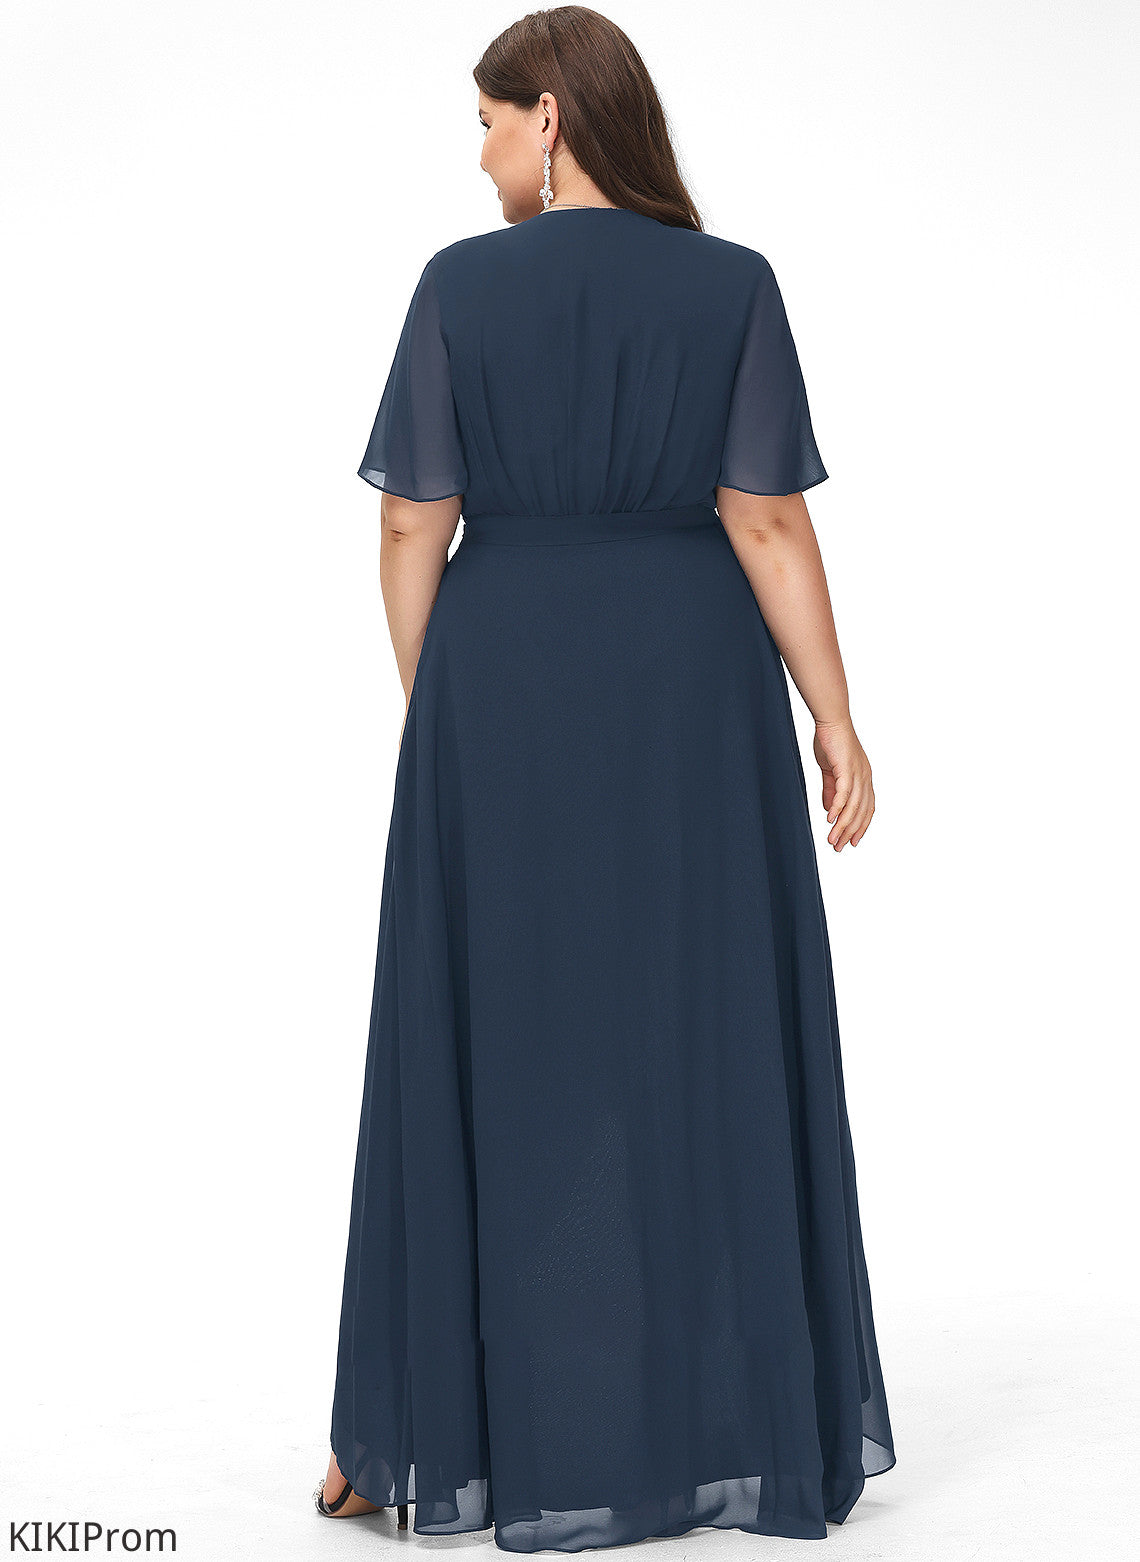 Silhouette Neckline A-Line V-neck Embellishment Fabric Length Asymmetrical Bow(s) Dania Scoop A-Line/Princess Bridesmaid Dresses